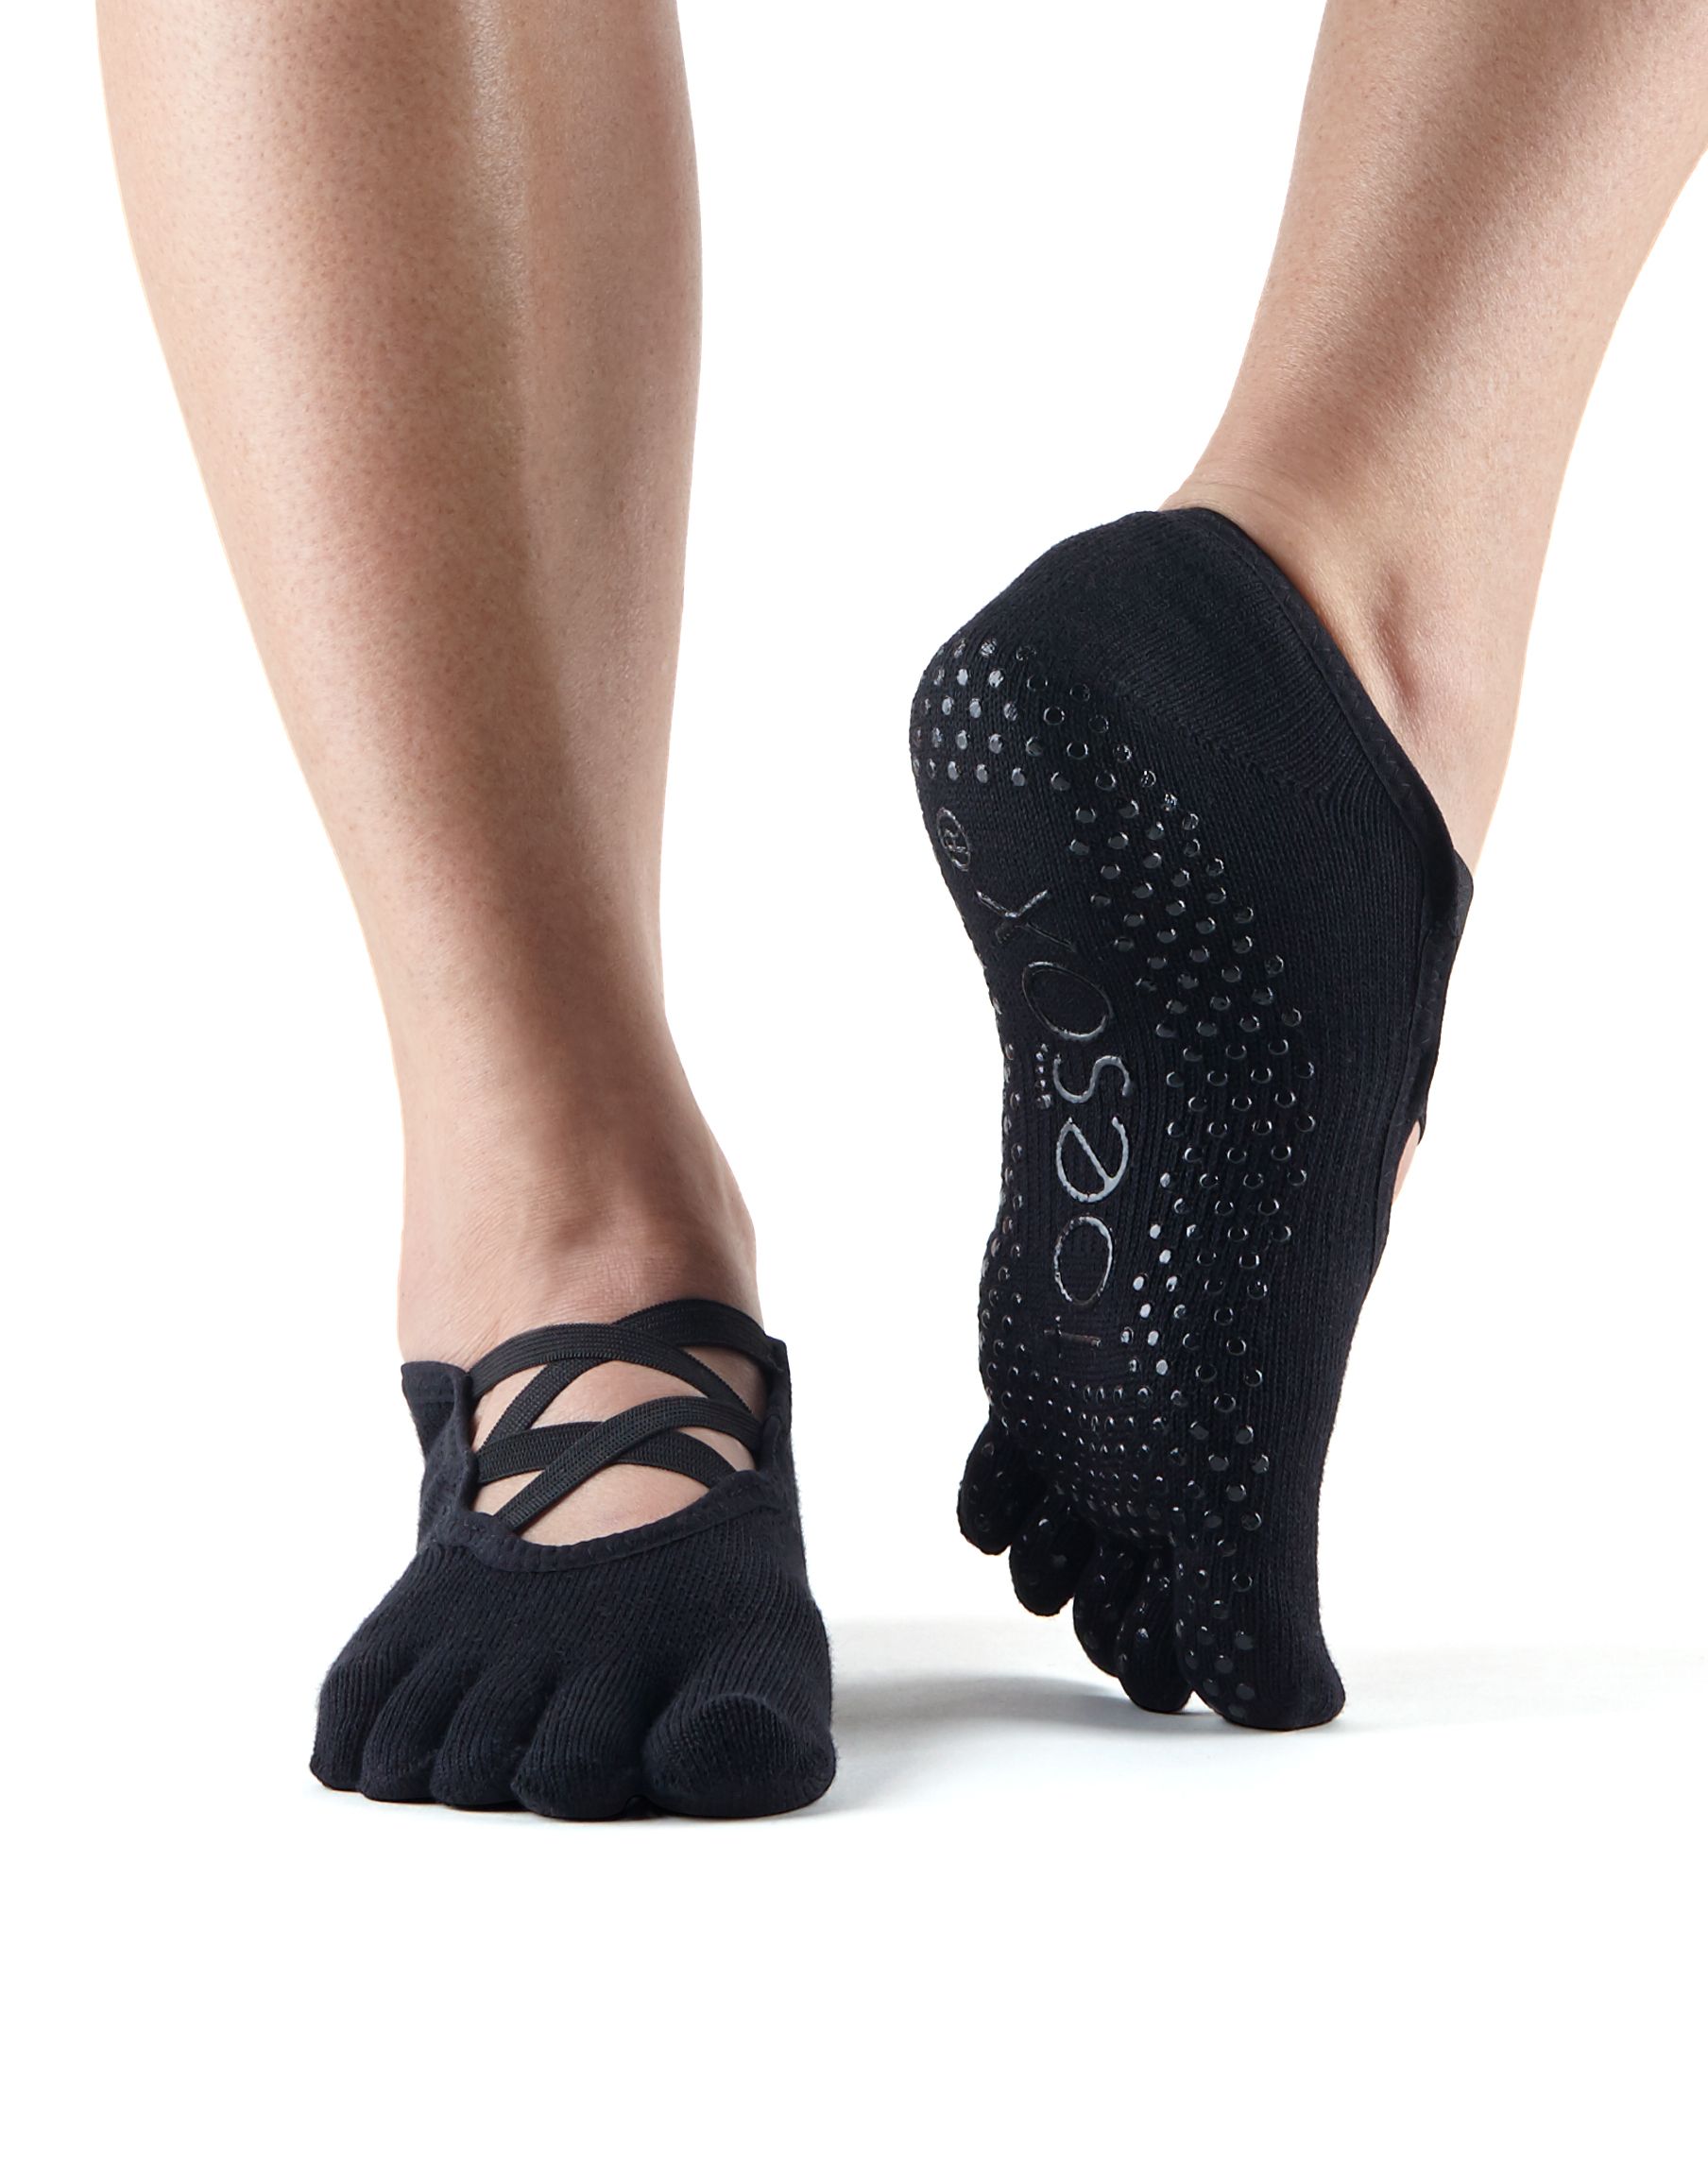 Foto Op maat Niet ingewikkeld Antislip sokken Elle voordelig online kopen bij Yoga-pilatesshop